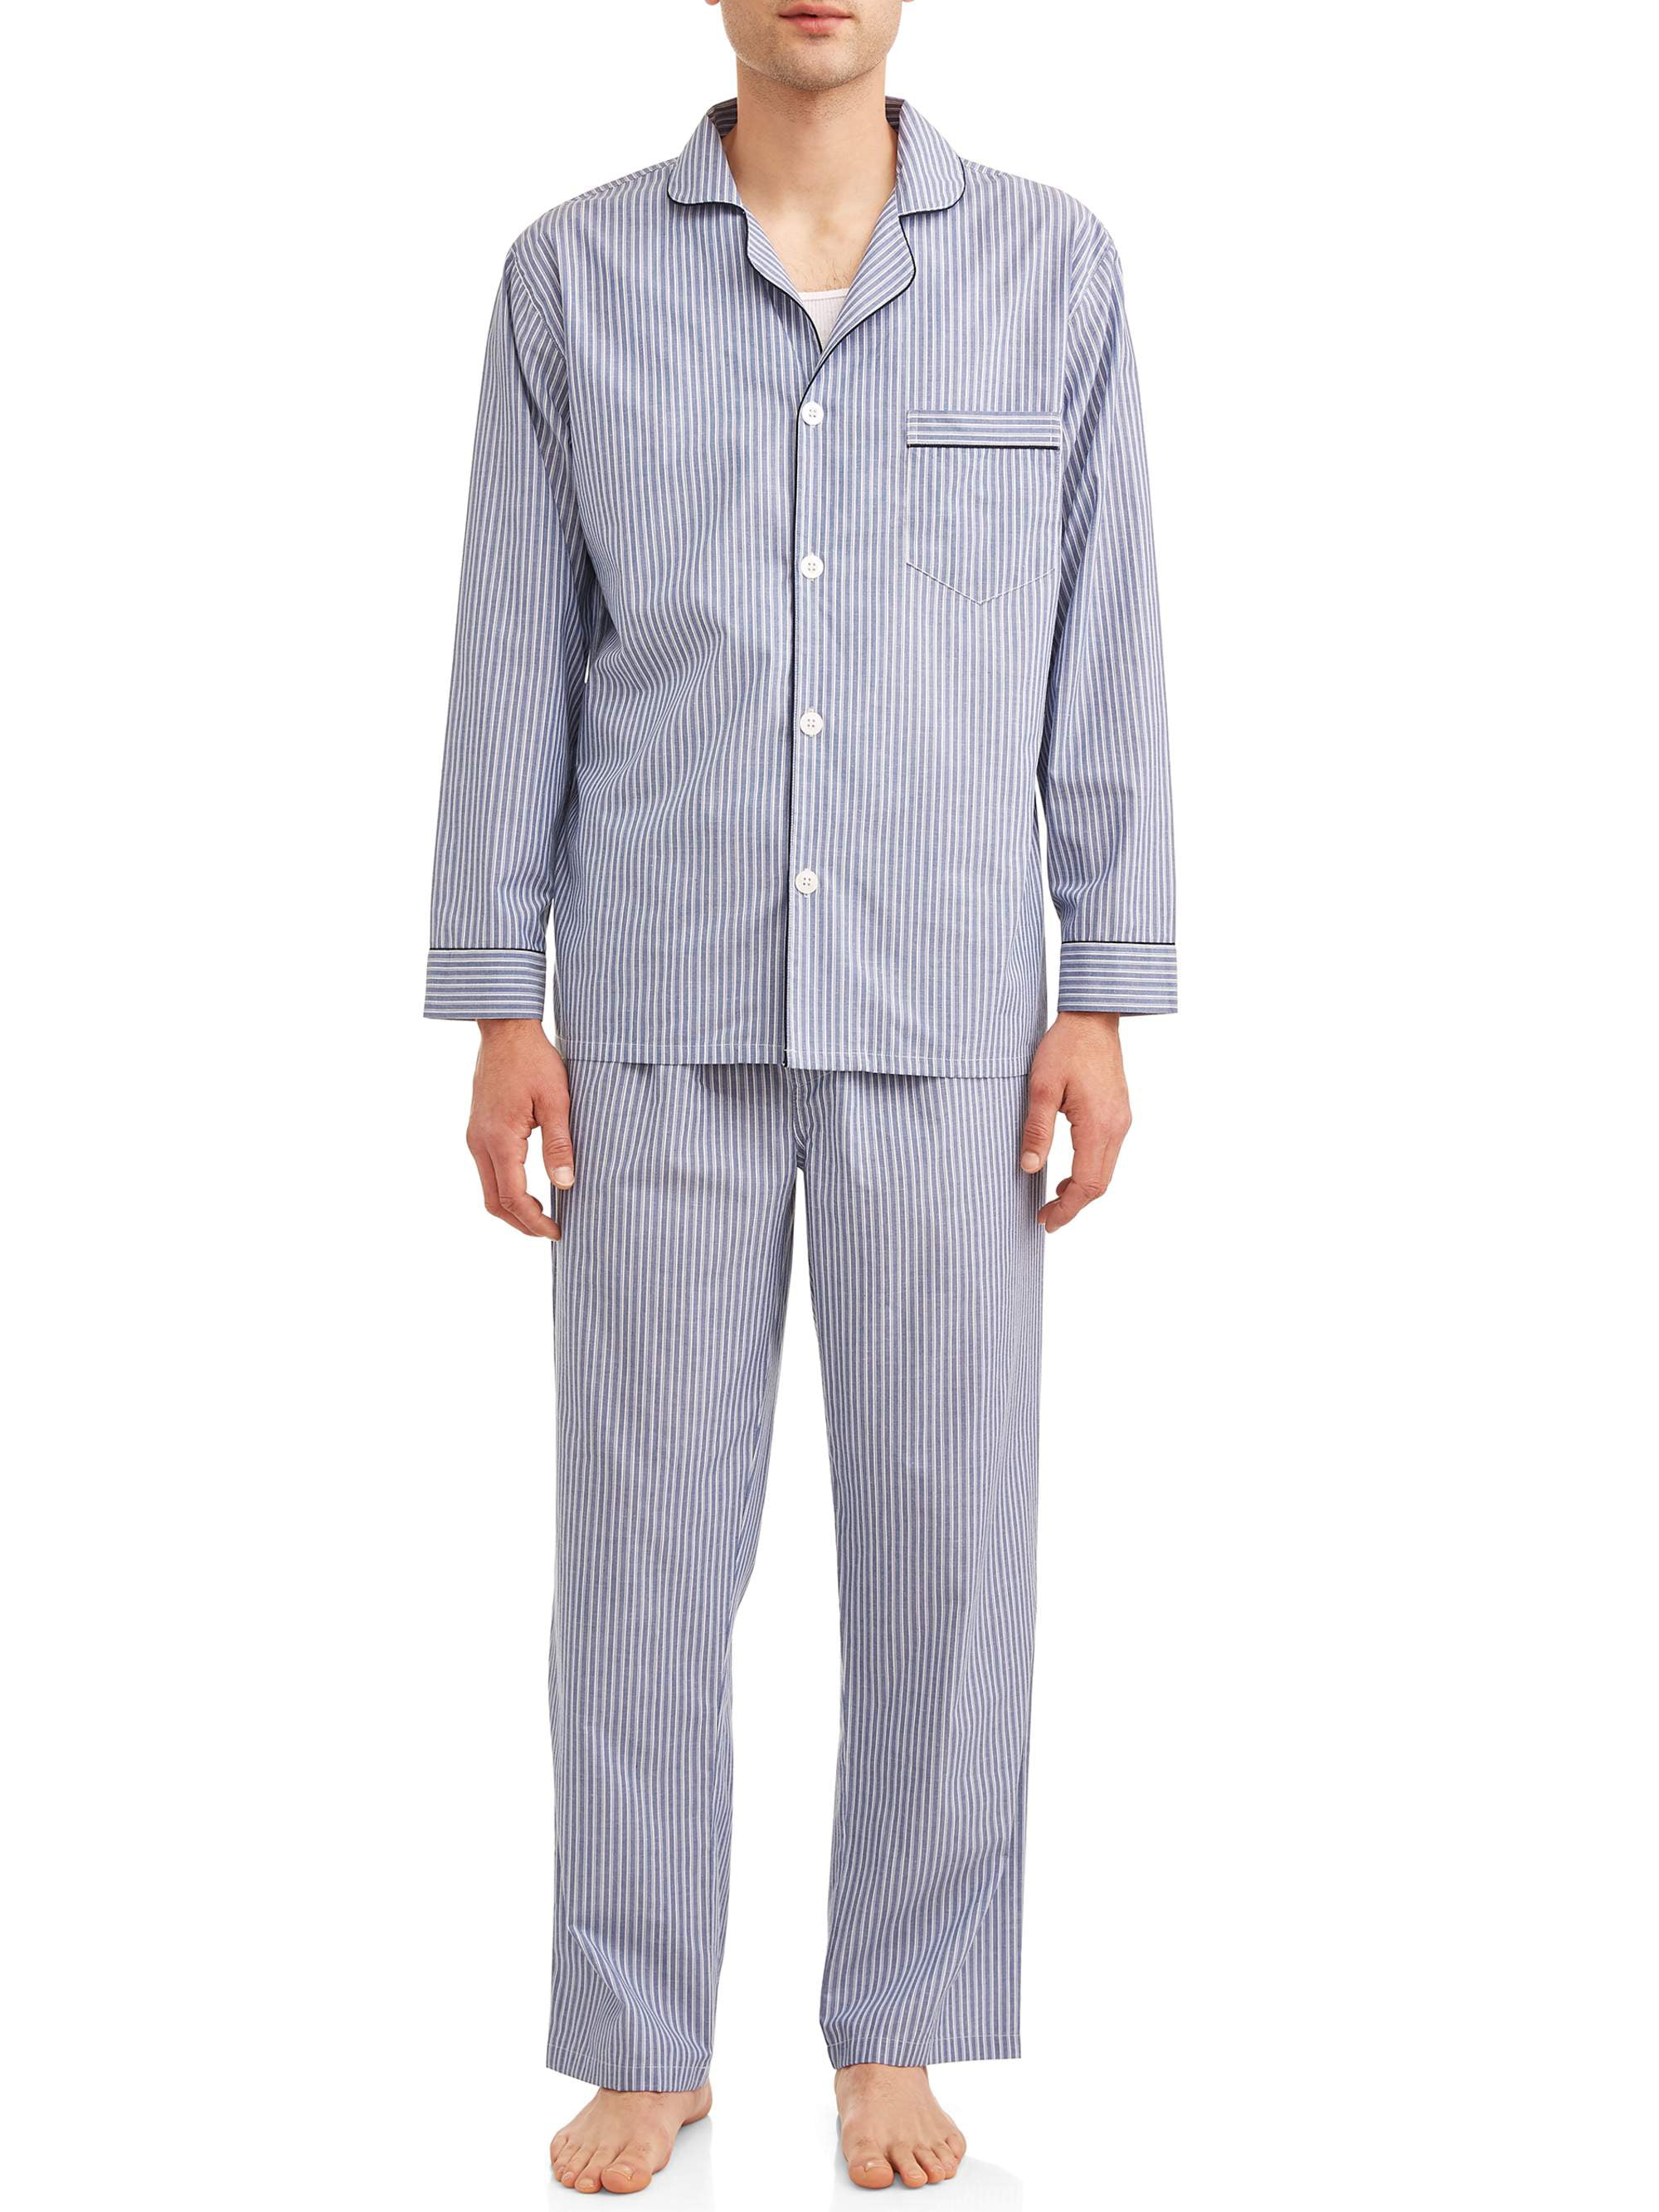 Hanes - Hanes Men's Long Sleeve, Long Pant Woven Pajama Set - Walmart.com